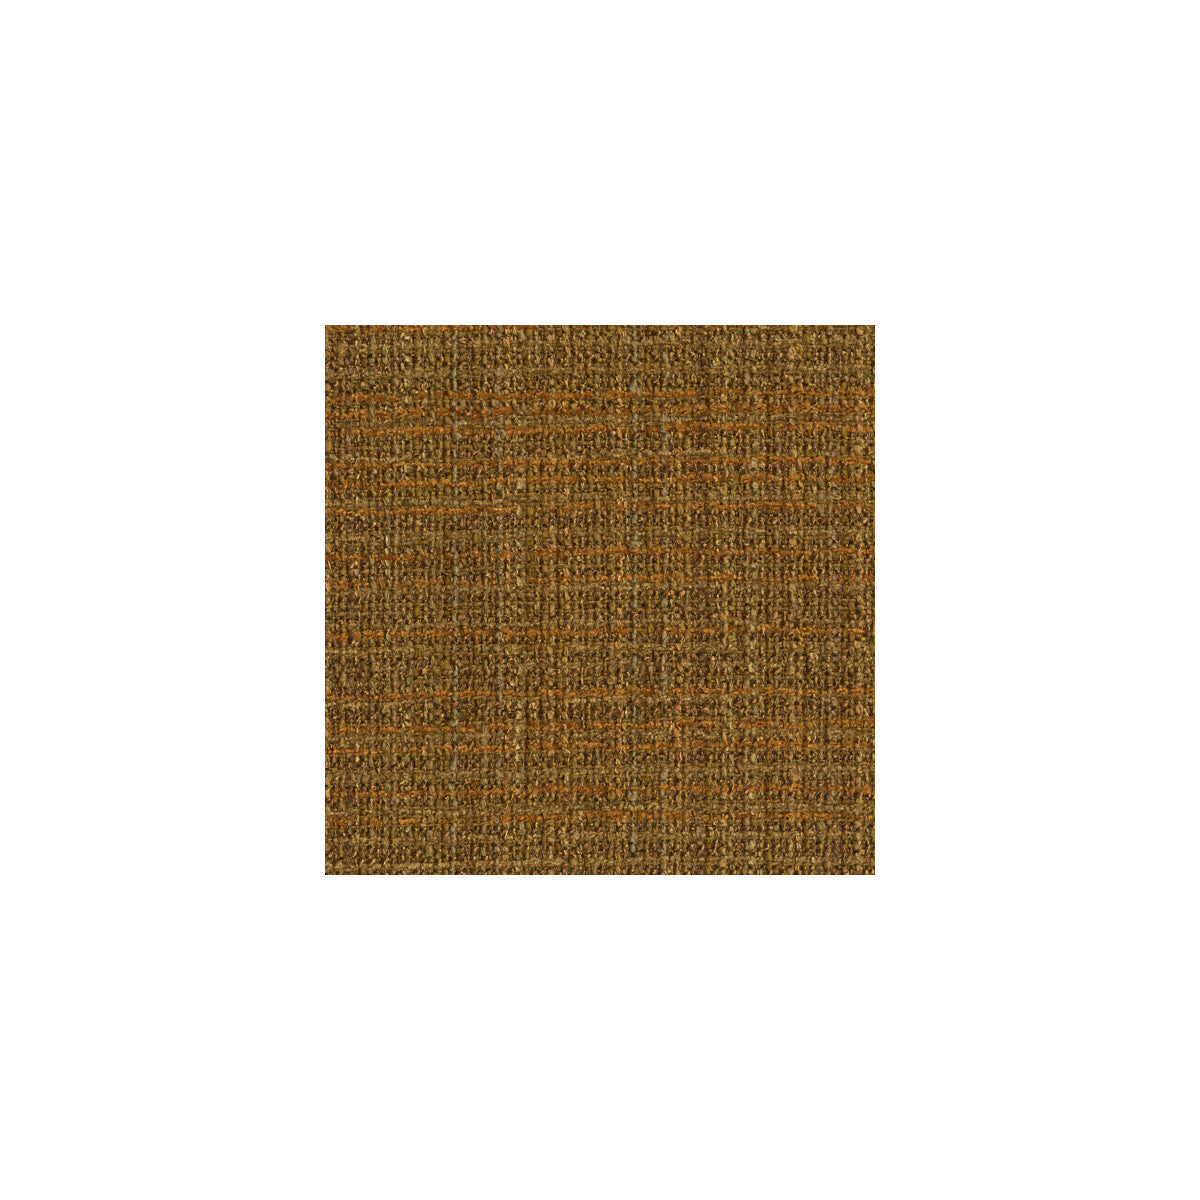 Kf Des fabric - pattern 25684.640.0 - by Kravet Design